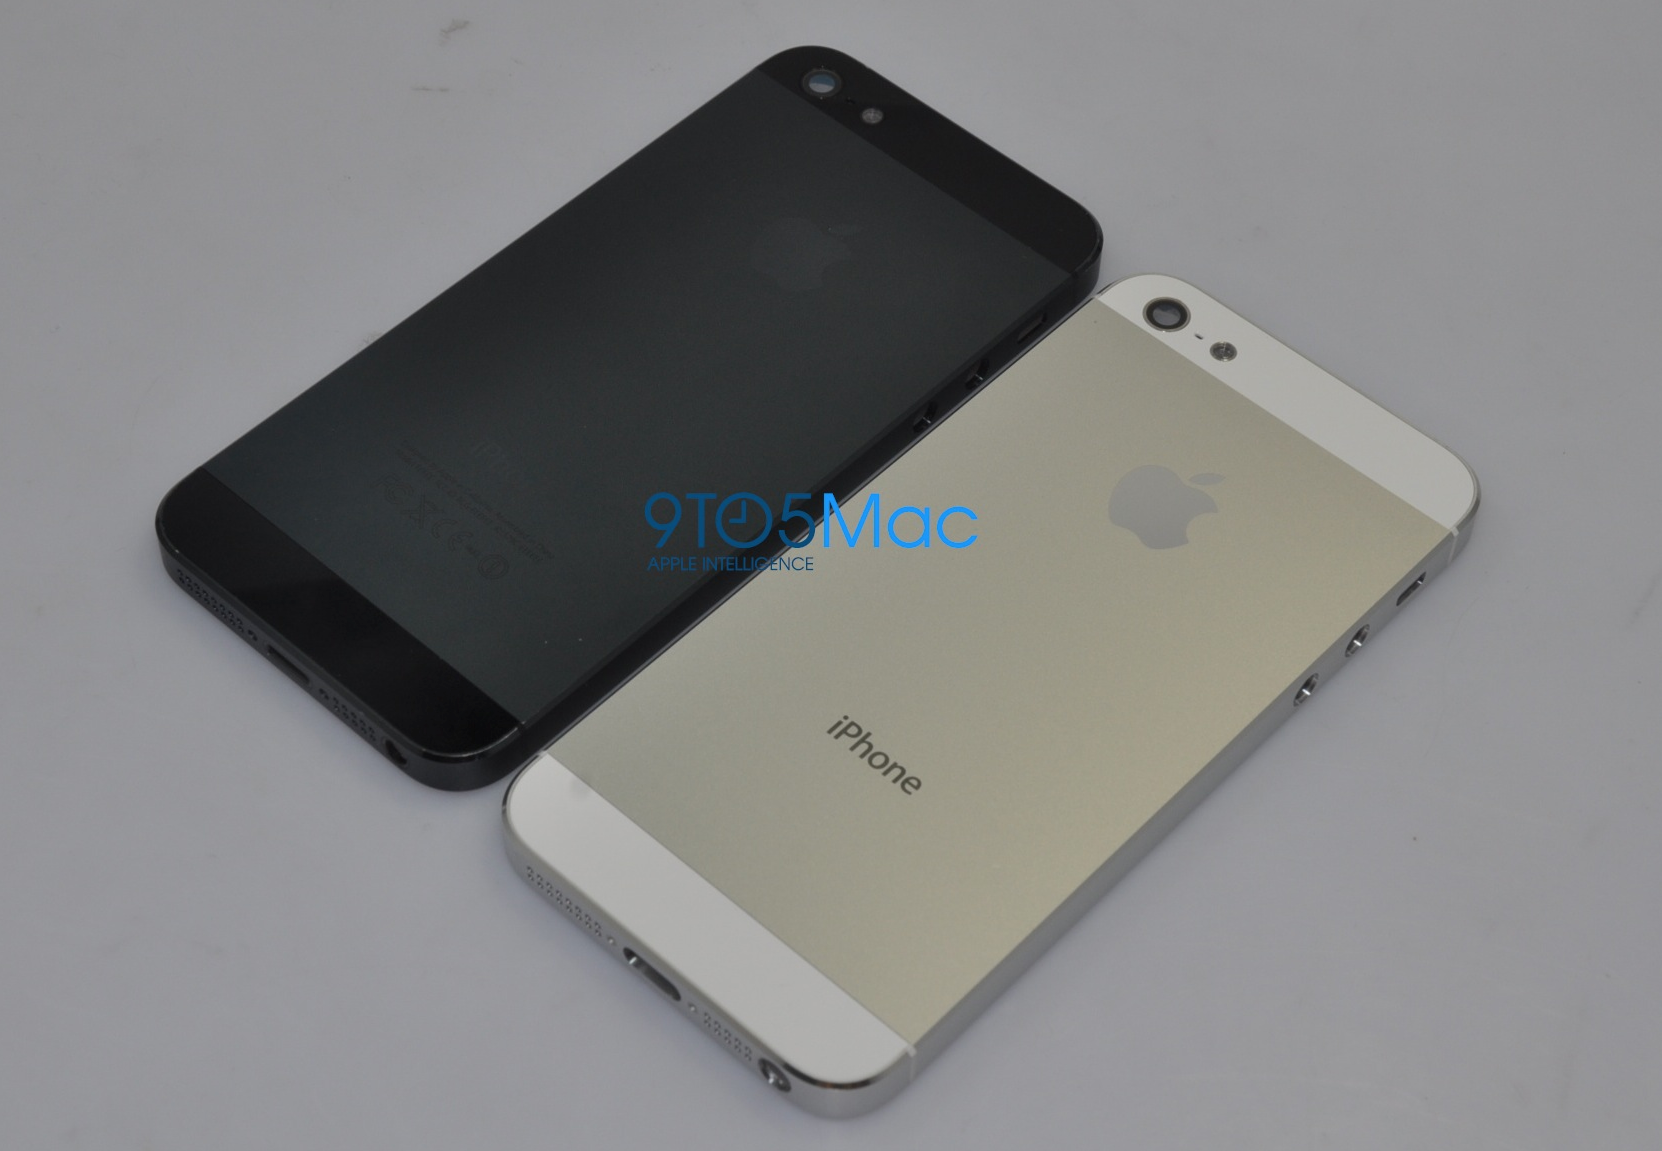 carcasa del iPhone 5, blanca y negra